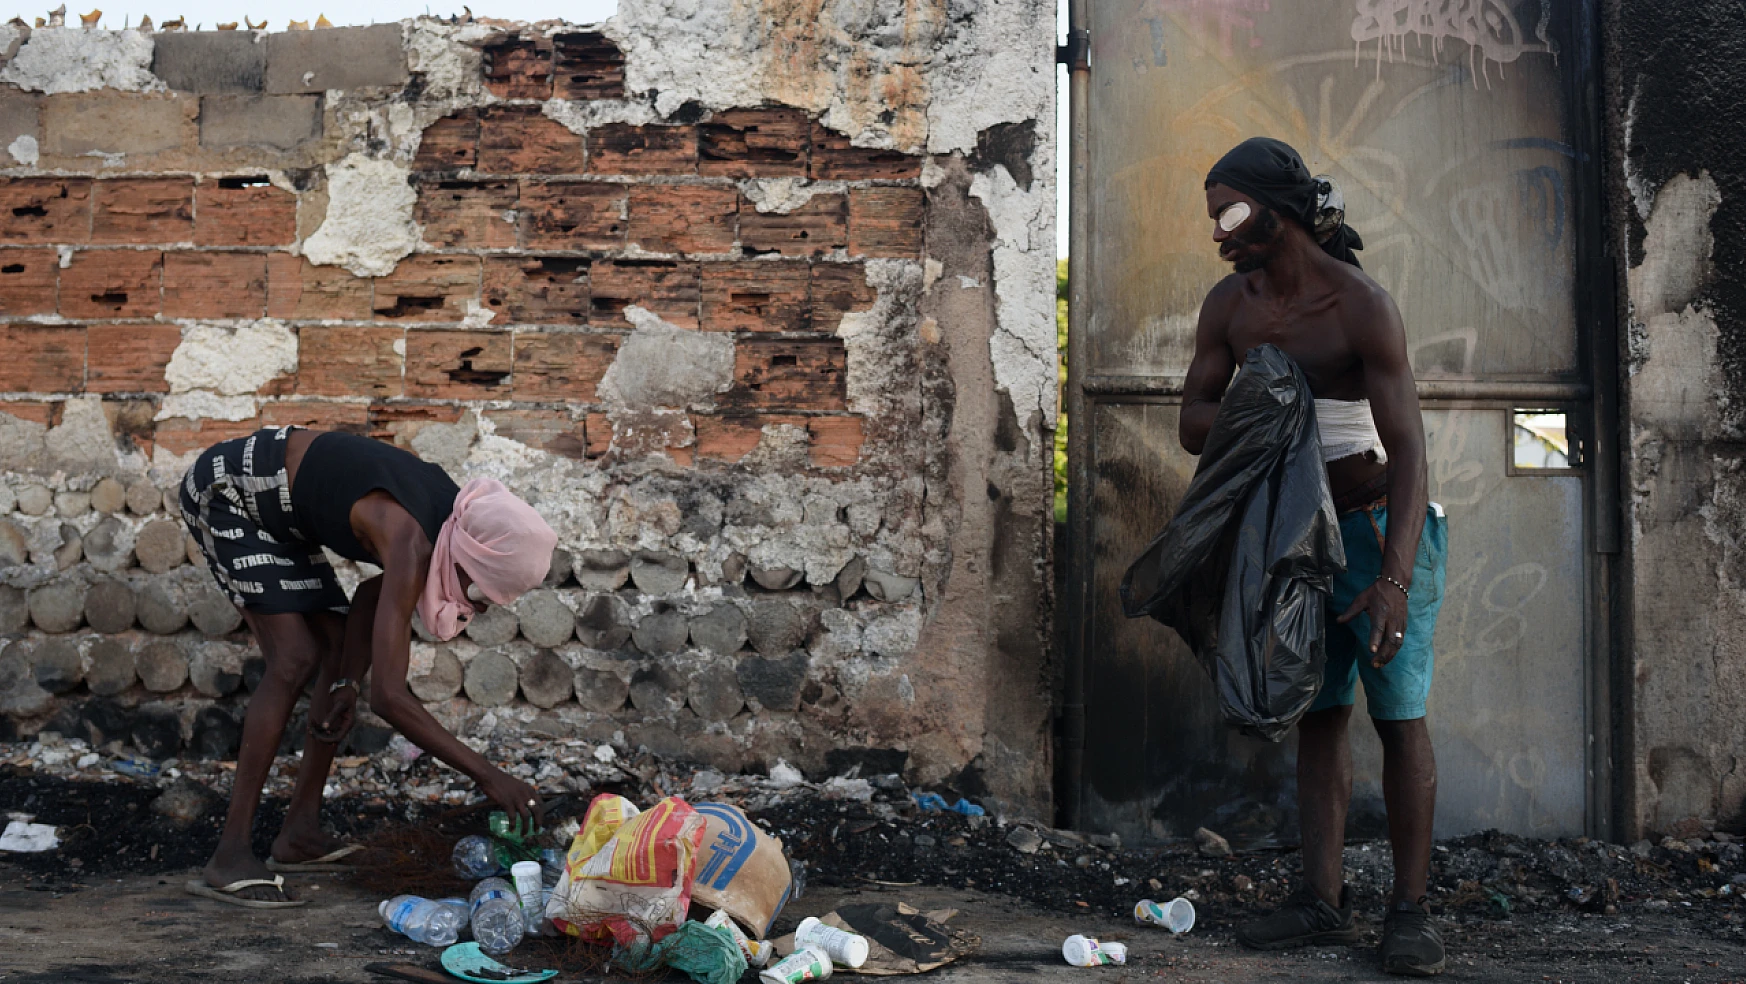 Rio de Janeiro'daki Afrikalı mülteciler zorlu koşullarla mücadele ediyor